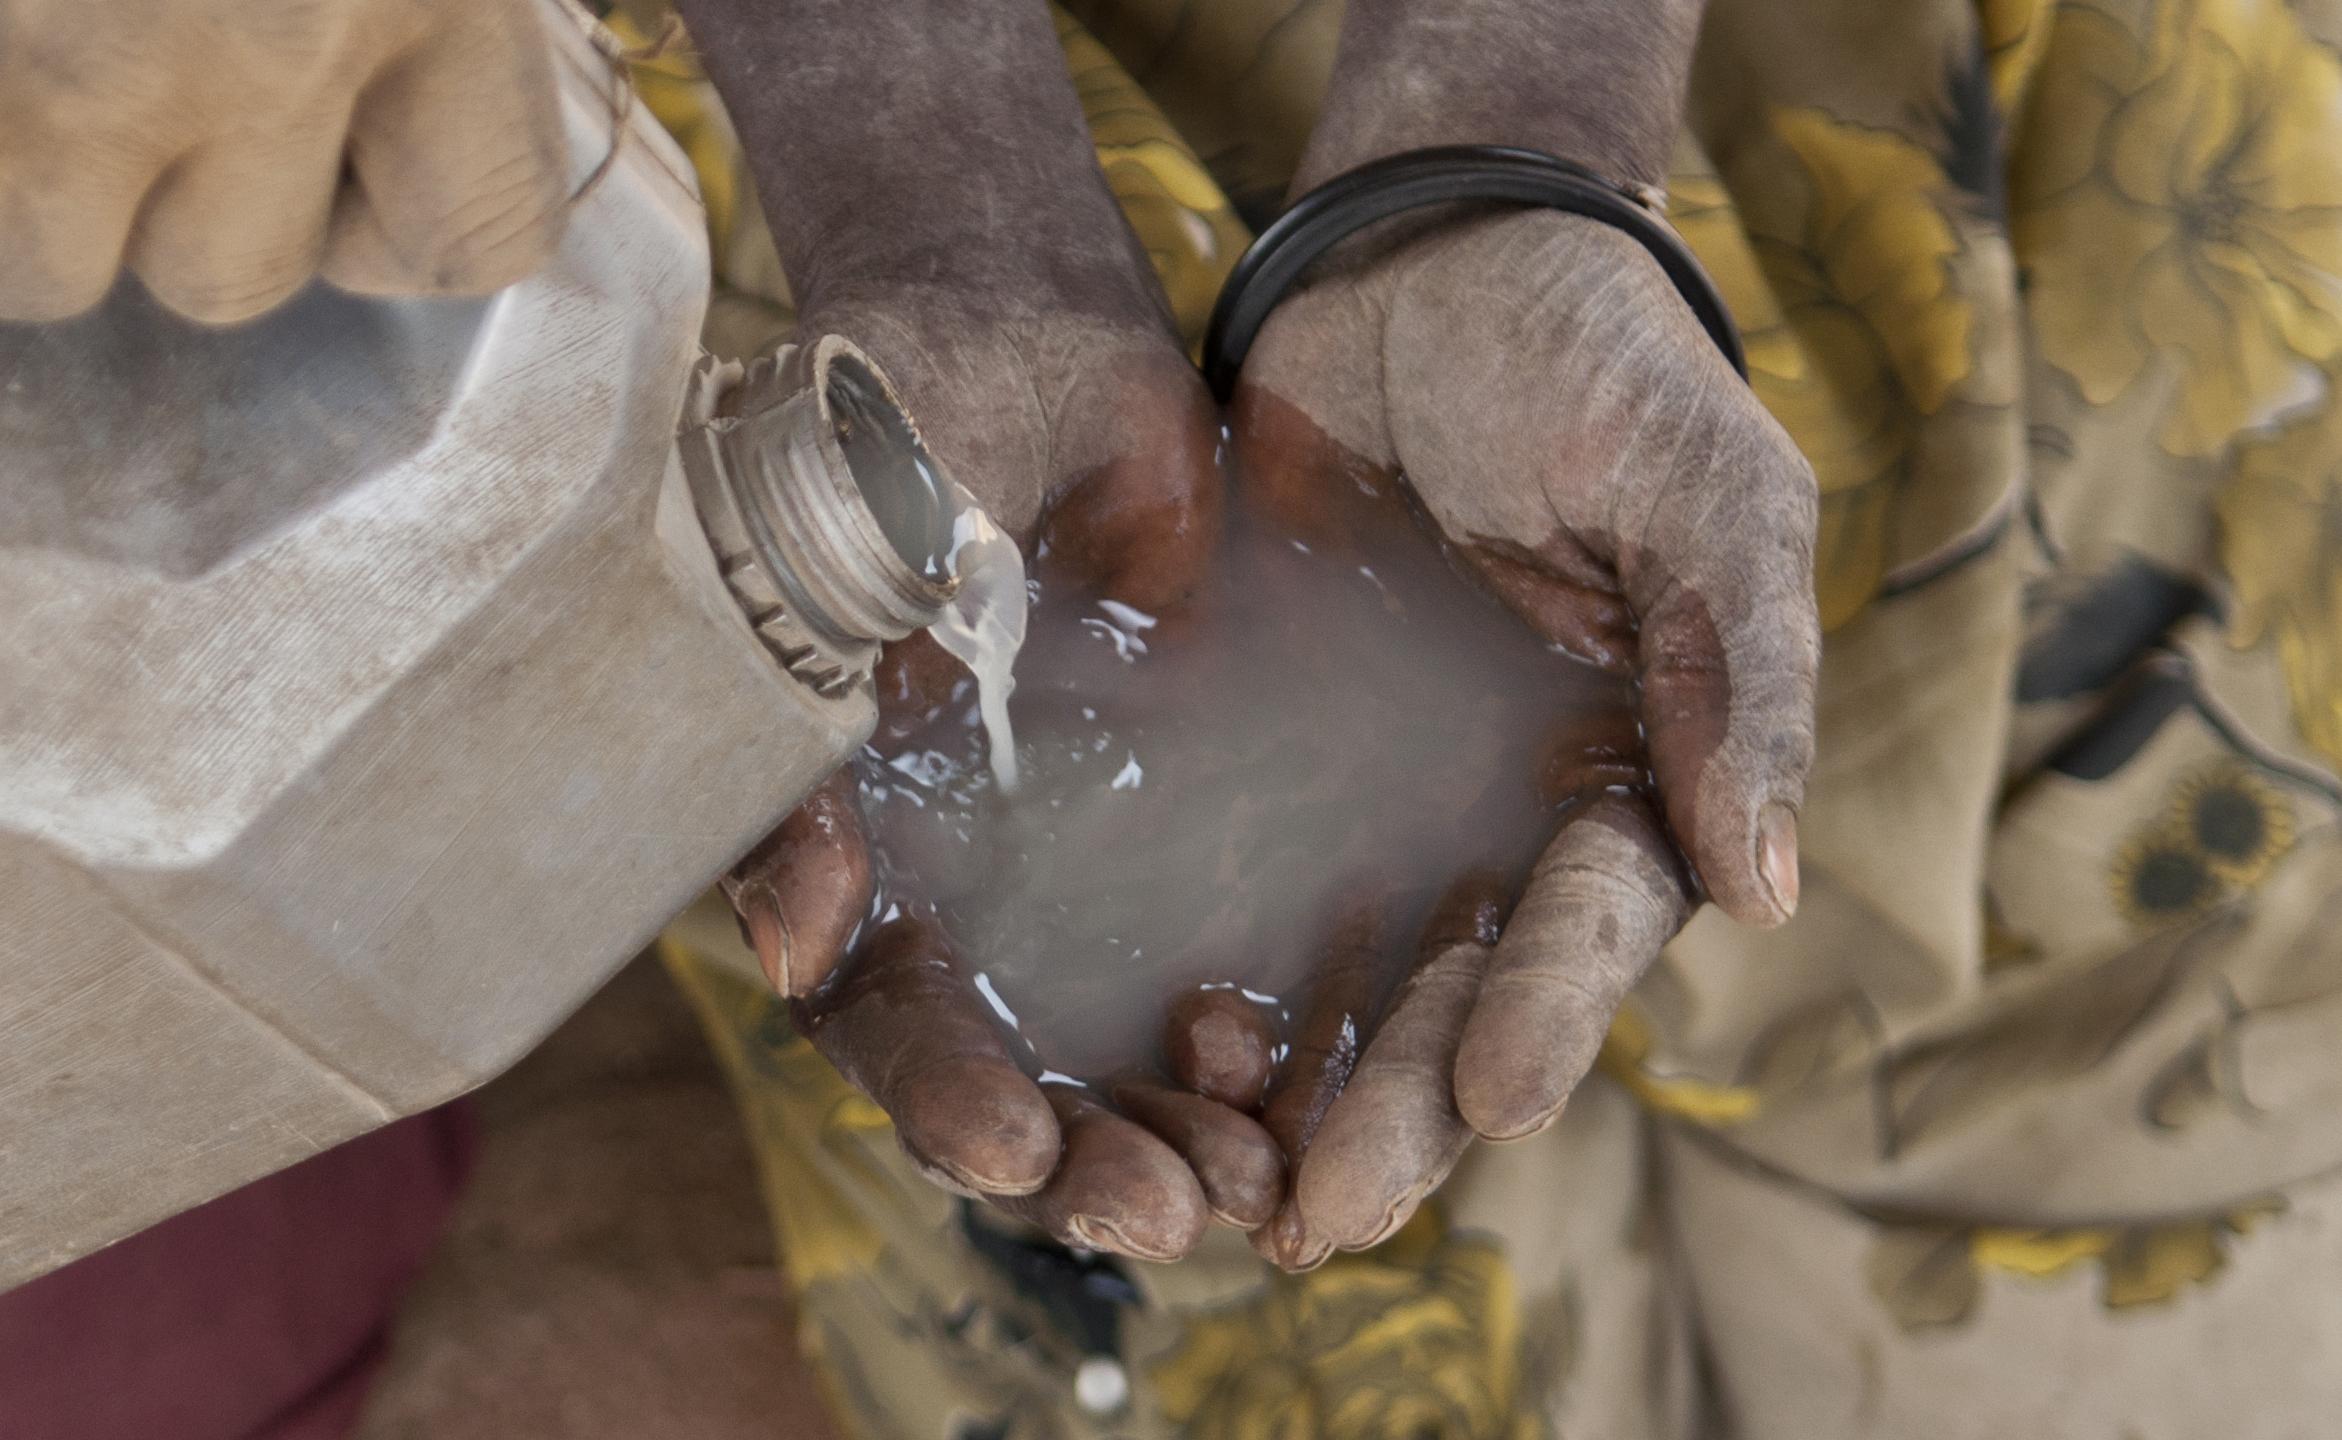 Viele der Vertriebenen benutzen unbehandeltes Wasser aus Sümpfen und Flüssen. Der LWB verteilt Wasseraufbereitungstabletten um das Trinkwasser zu reinigen. Foto: Melany Markham